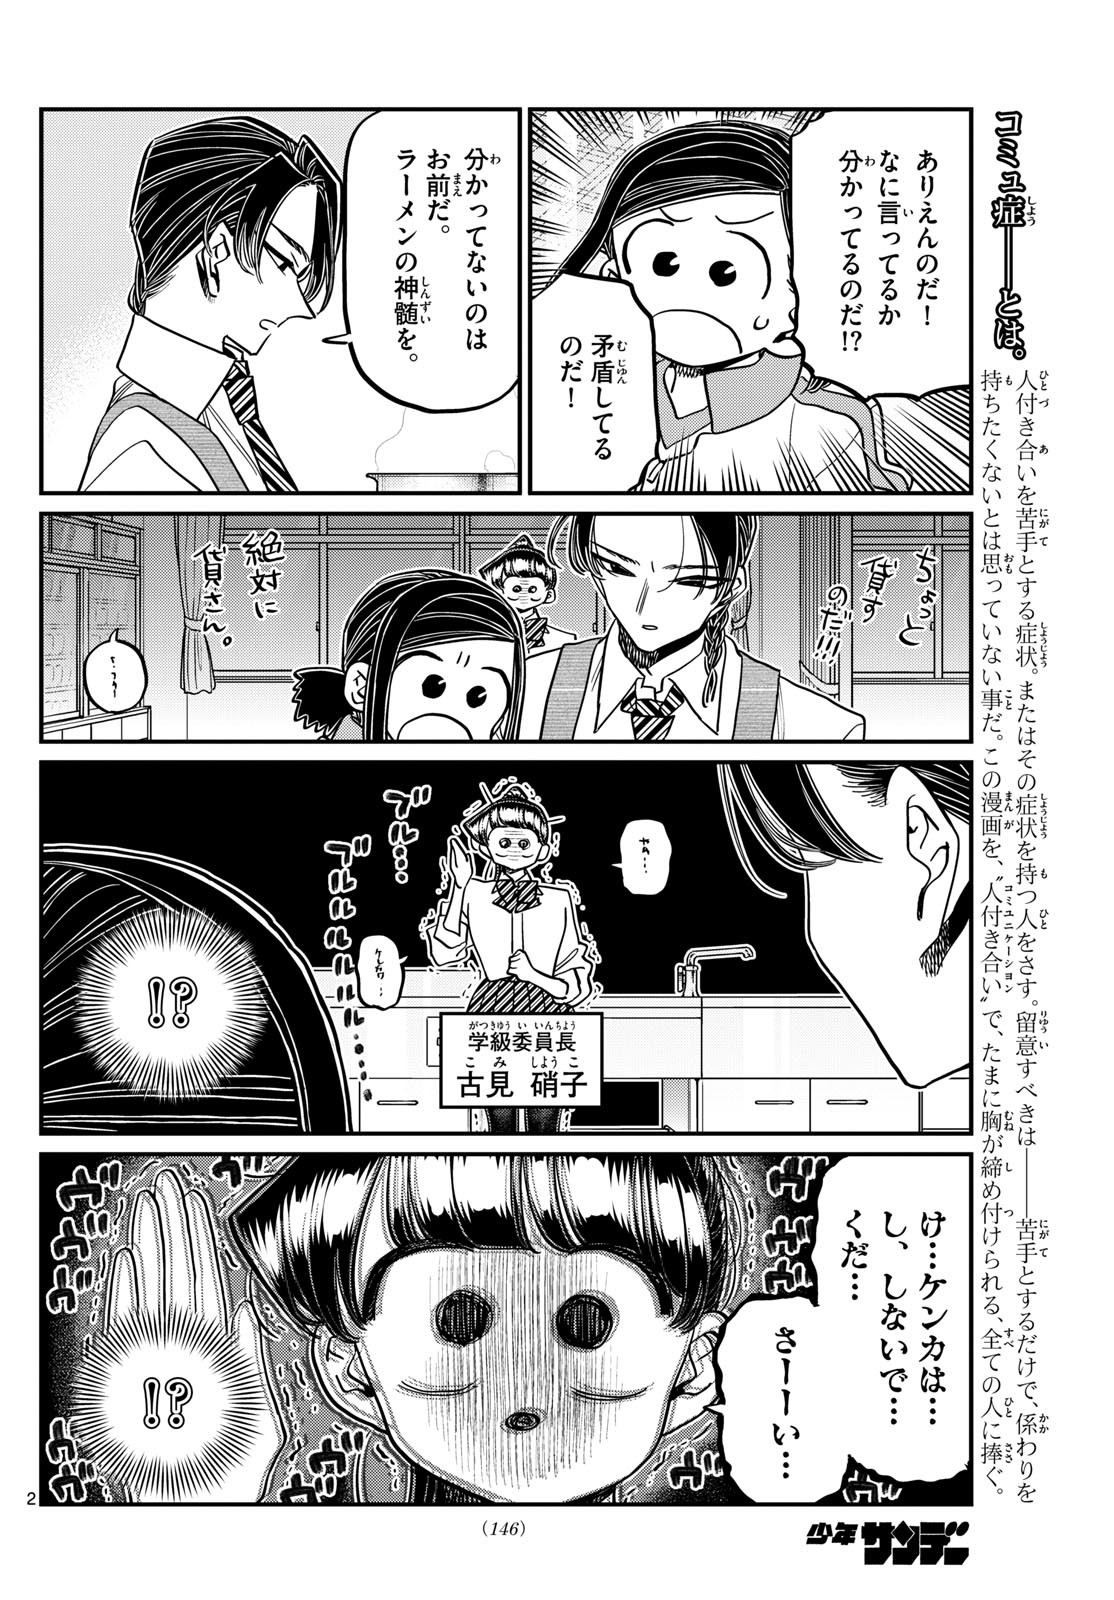 Komi-san wa Komyushou Desu - Chapter 450 - Page 2